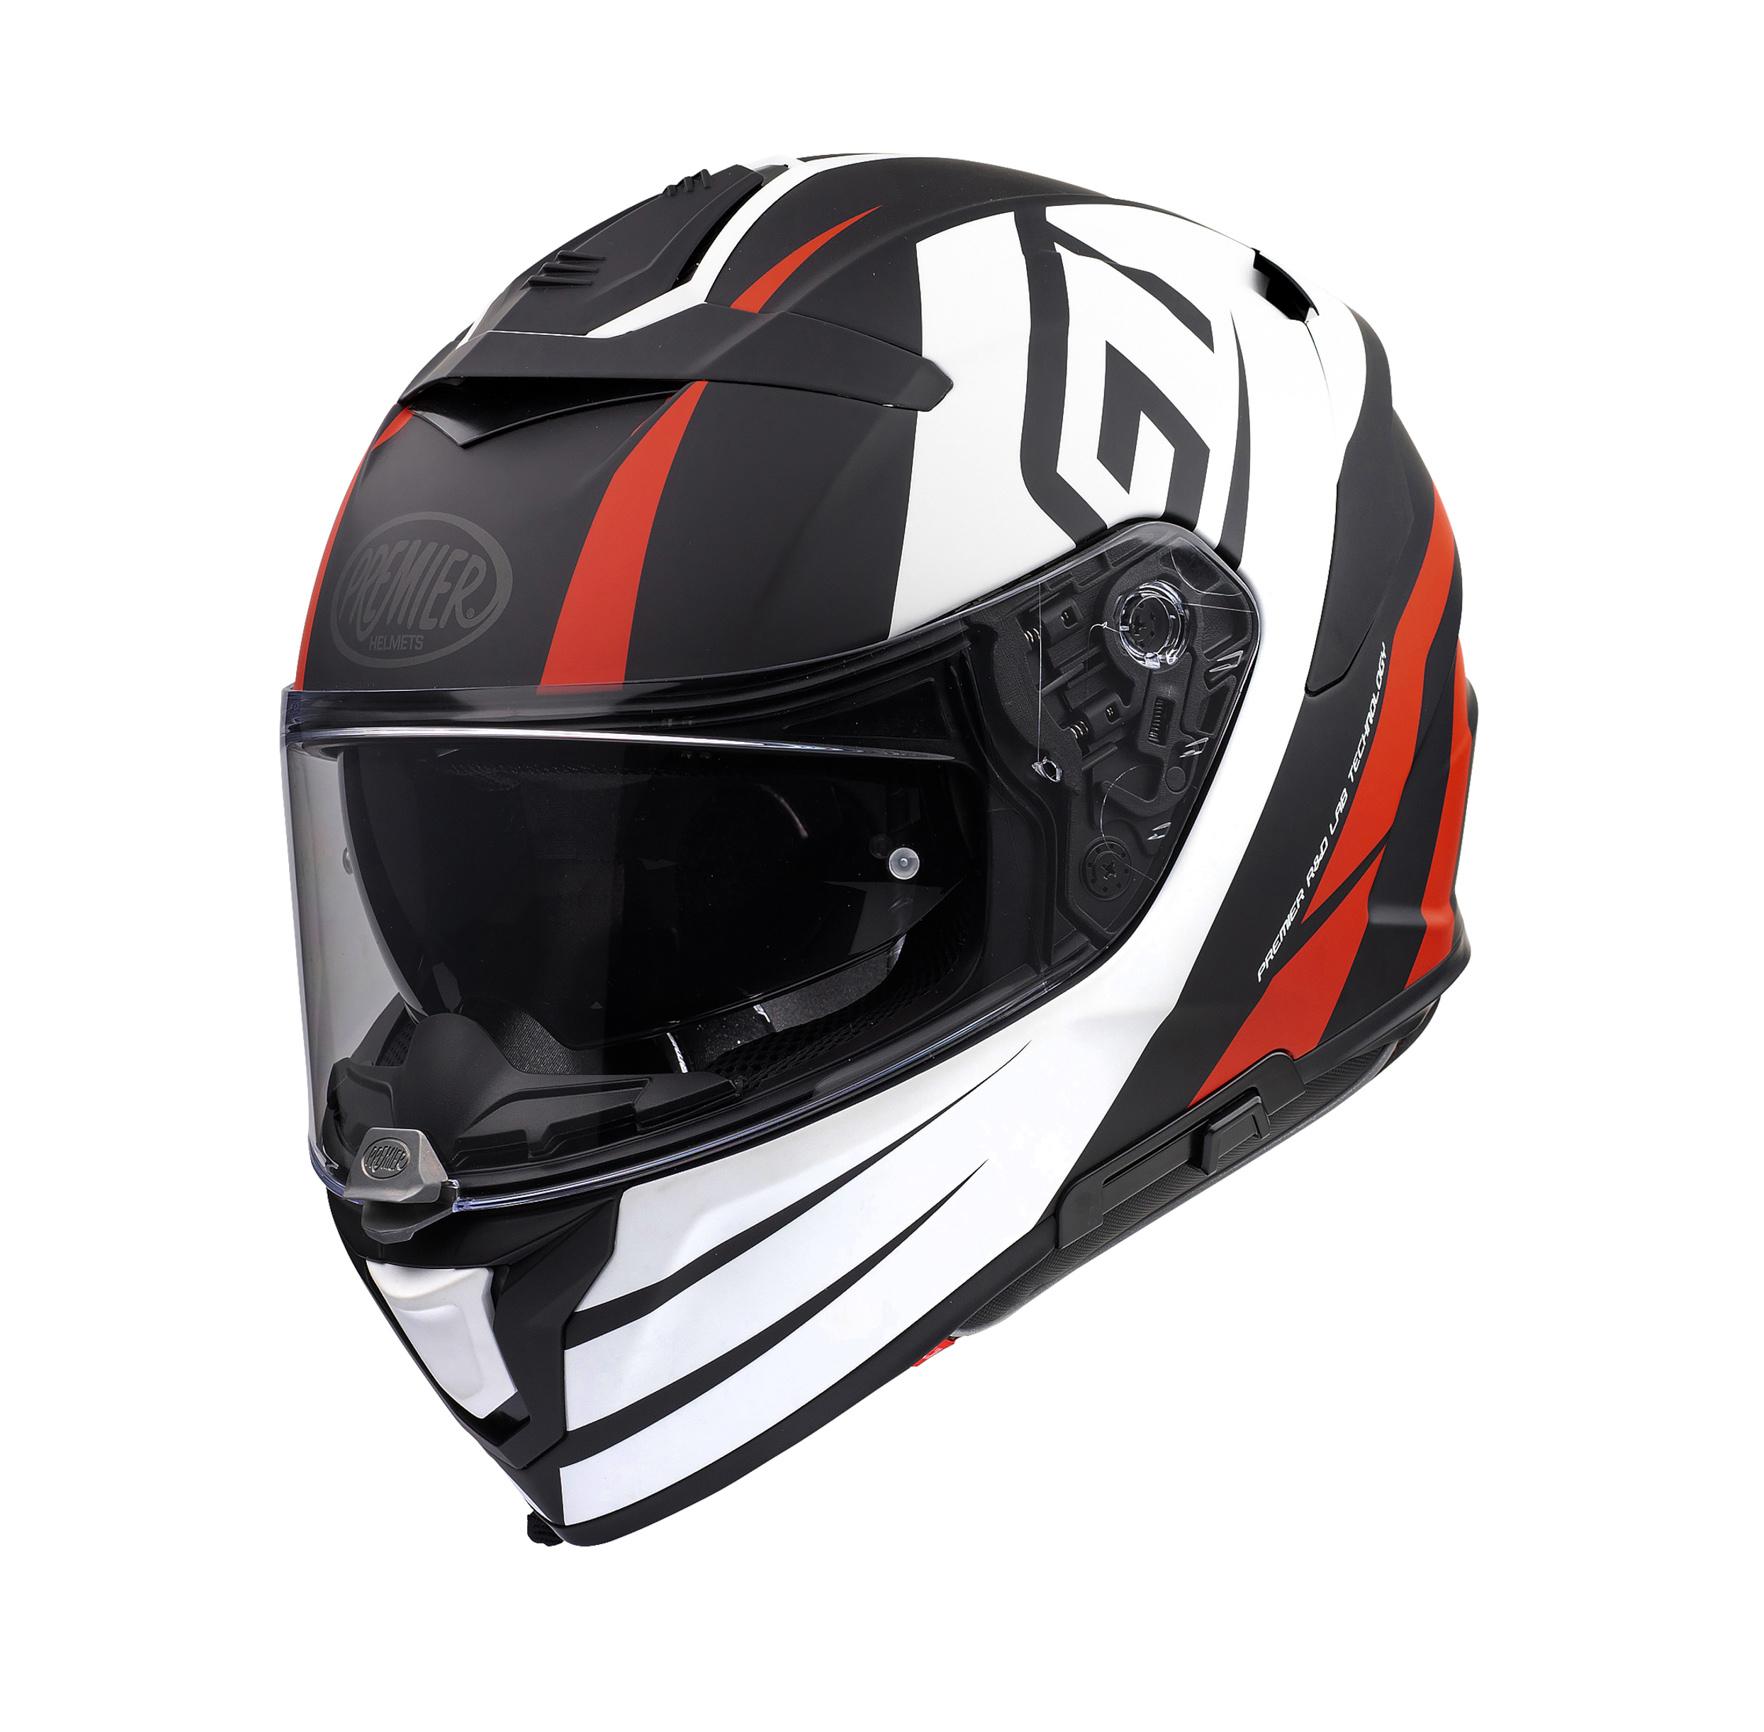 Premier Devil Gt Full Face Motorcycle Helmet - Black/White, Xl